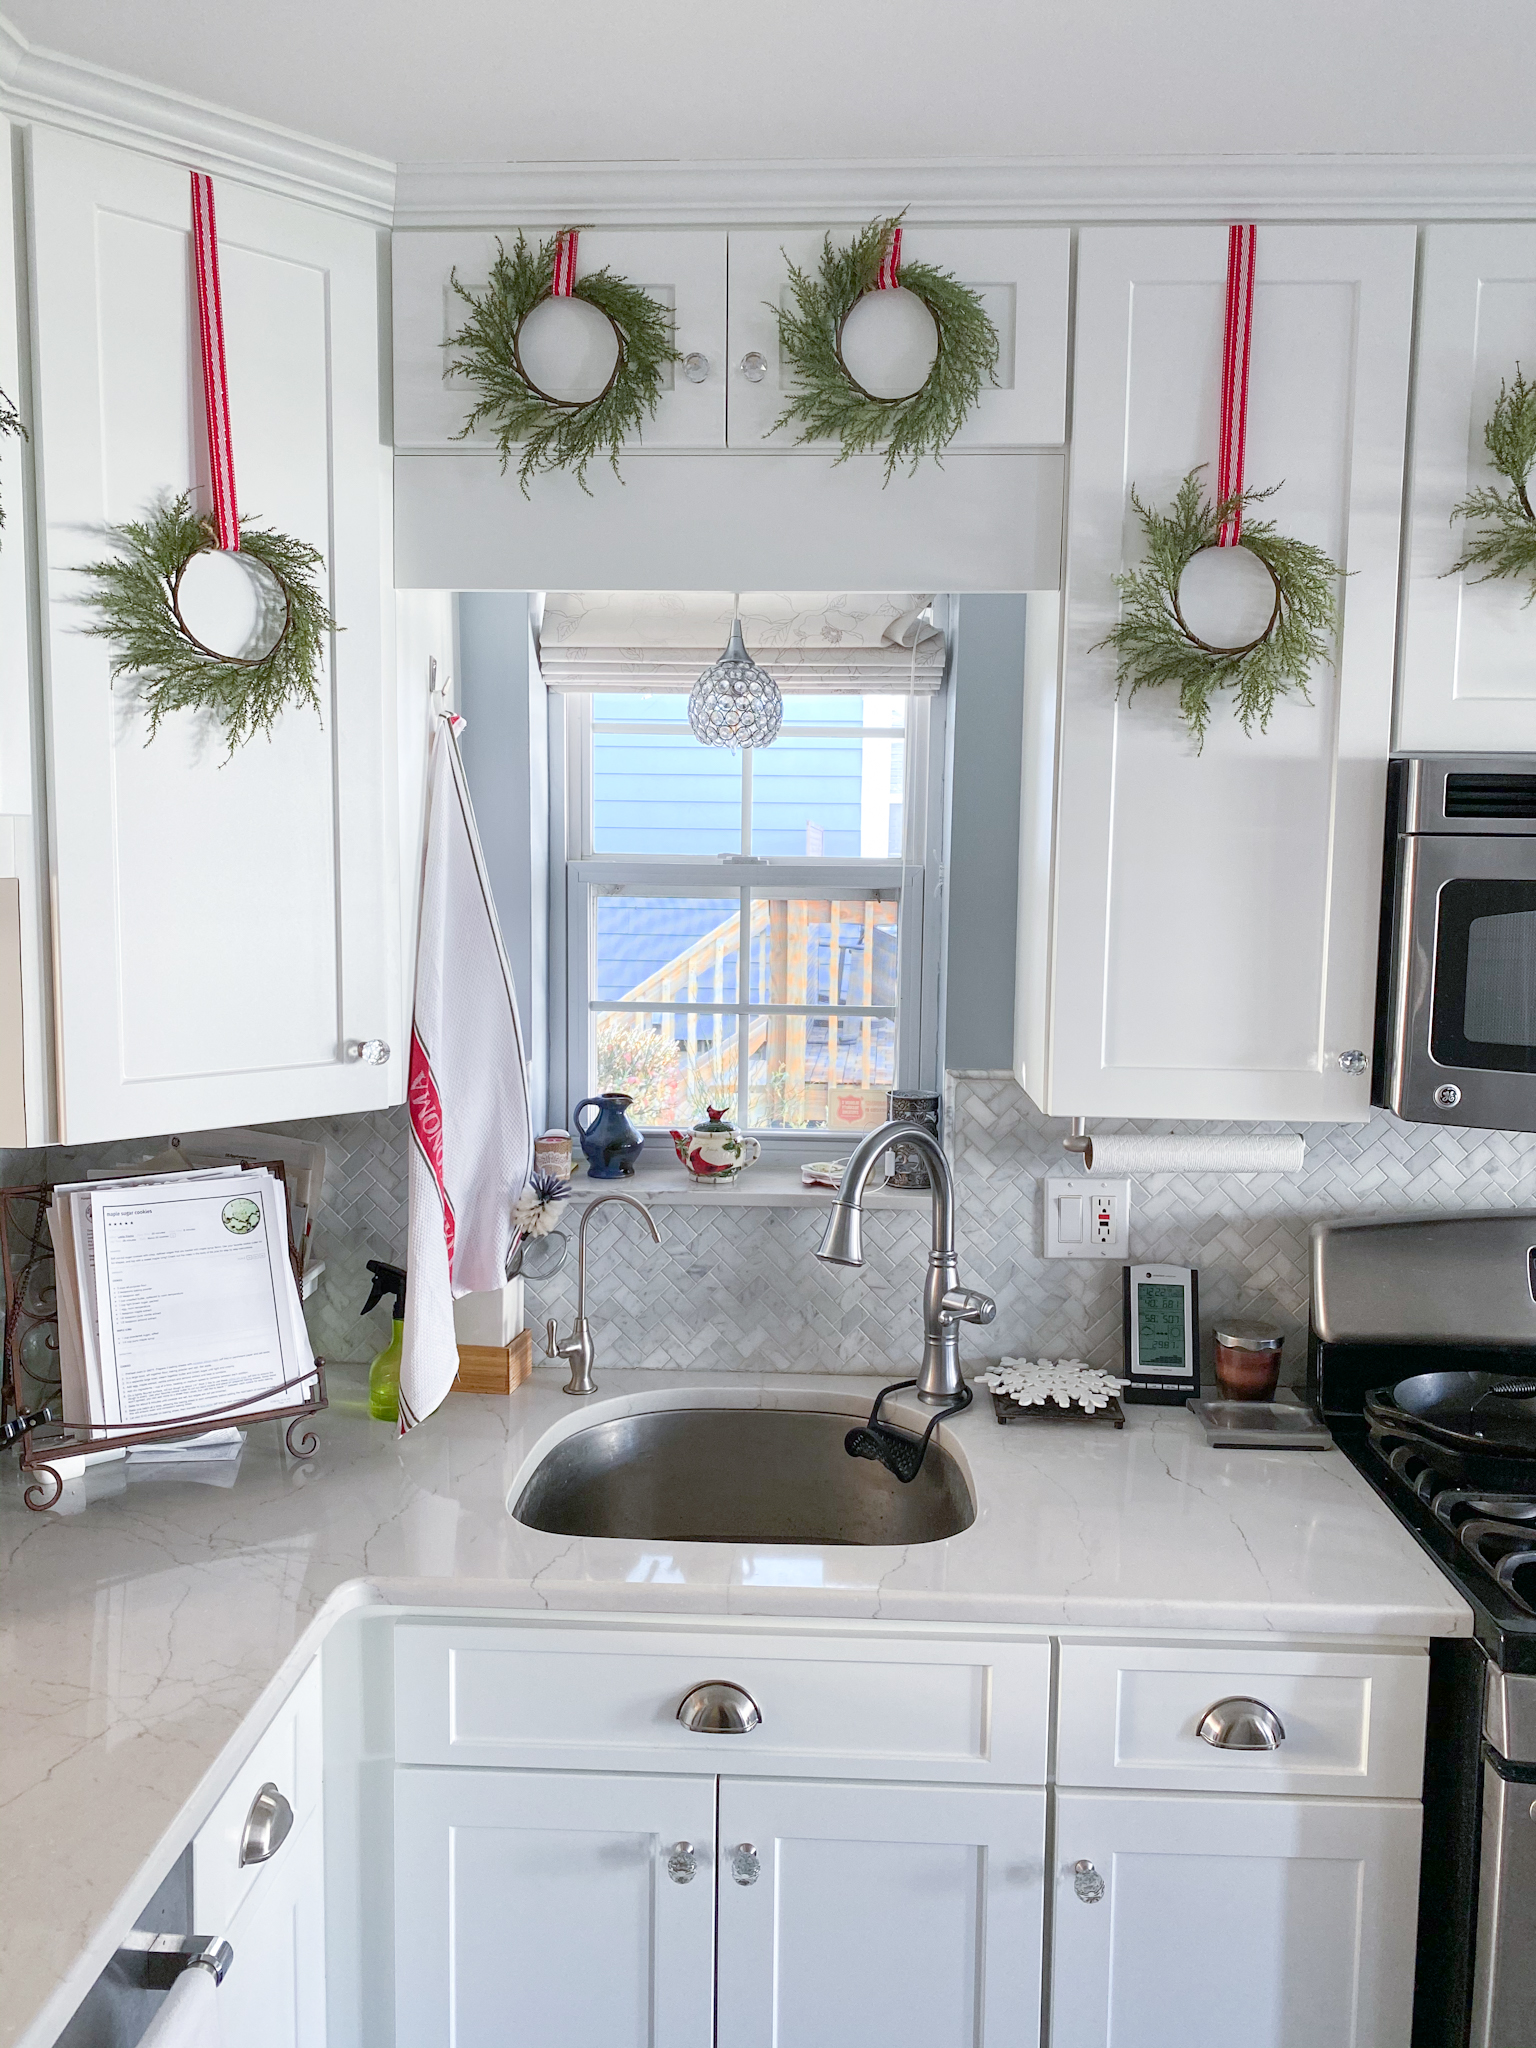 Kitchen Cabinet Christmas Wreaths - Teacher Baker Maker